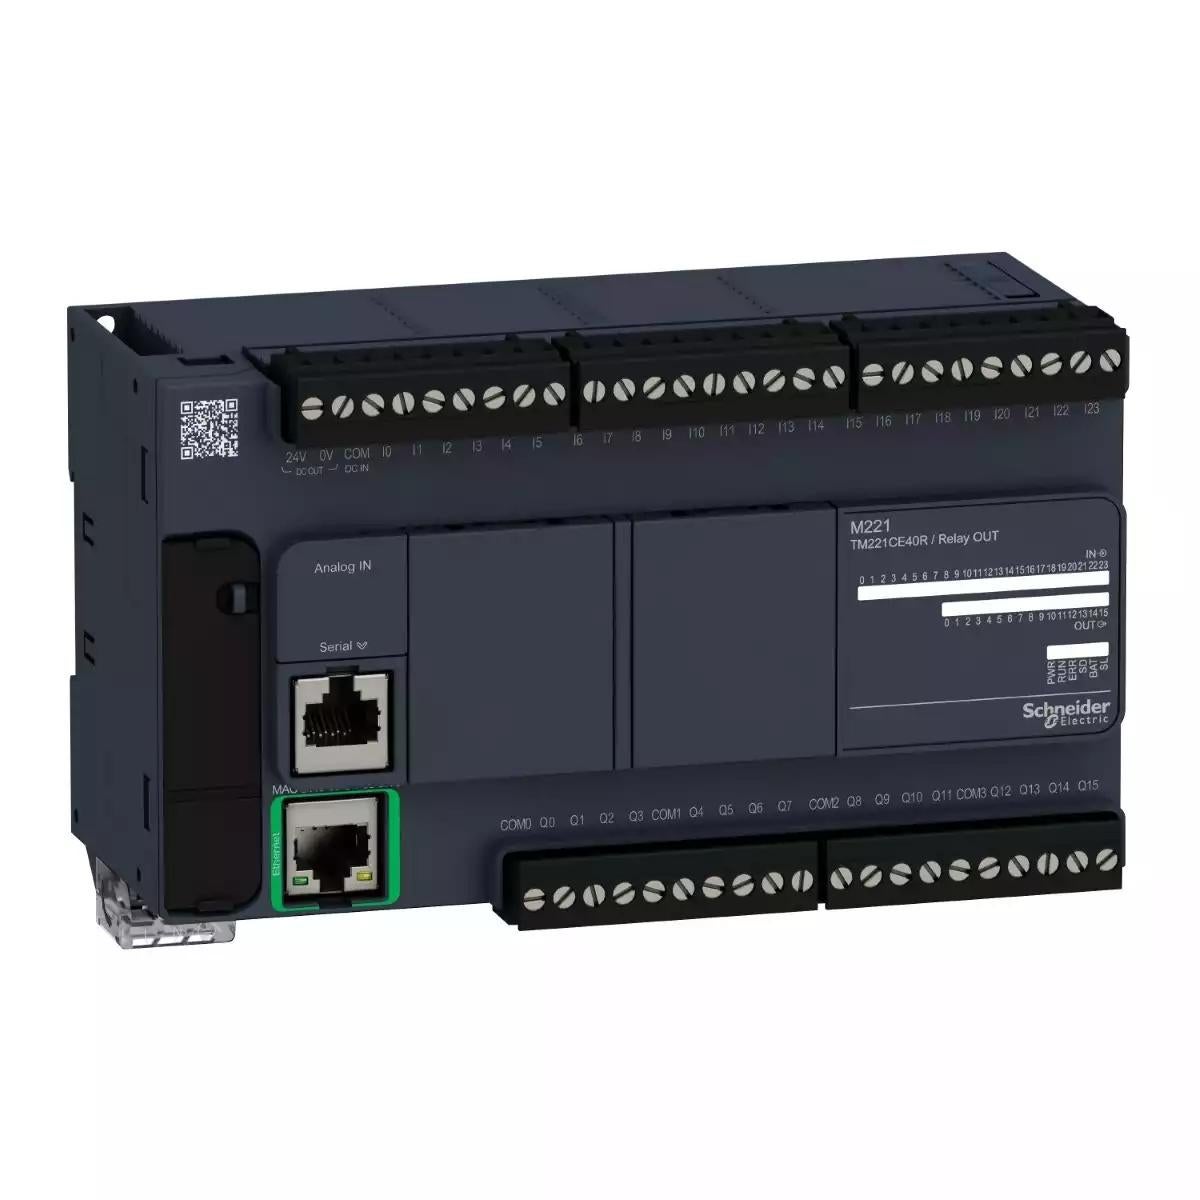 Schneider Electric Modicon M221 Controller 40 IO relay Ethernet 